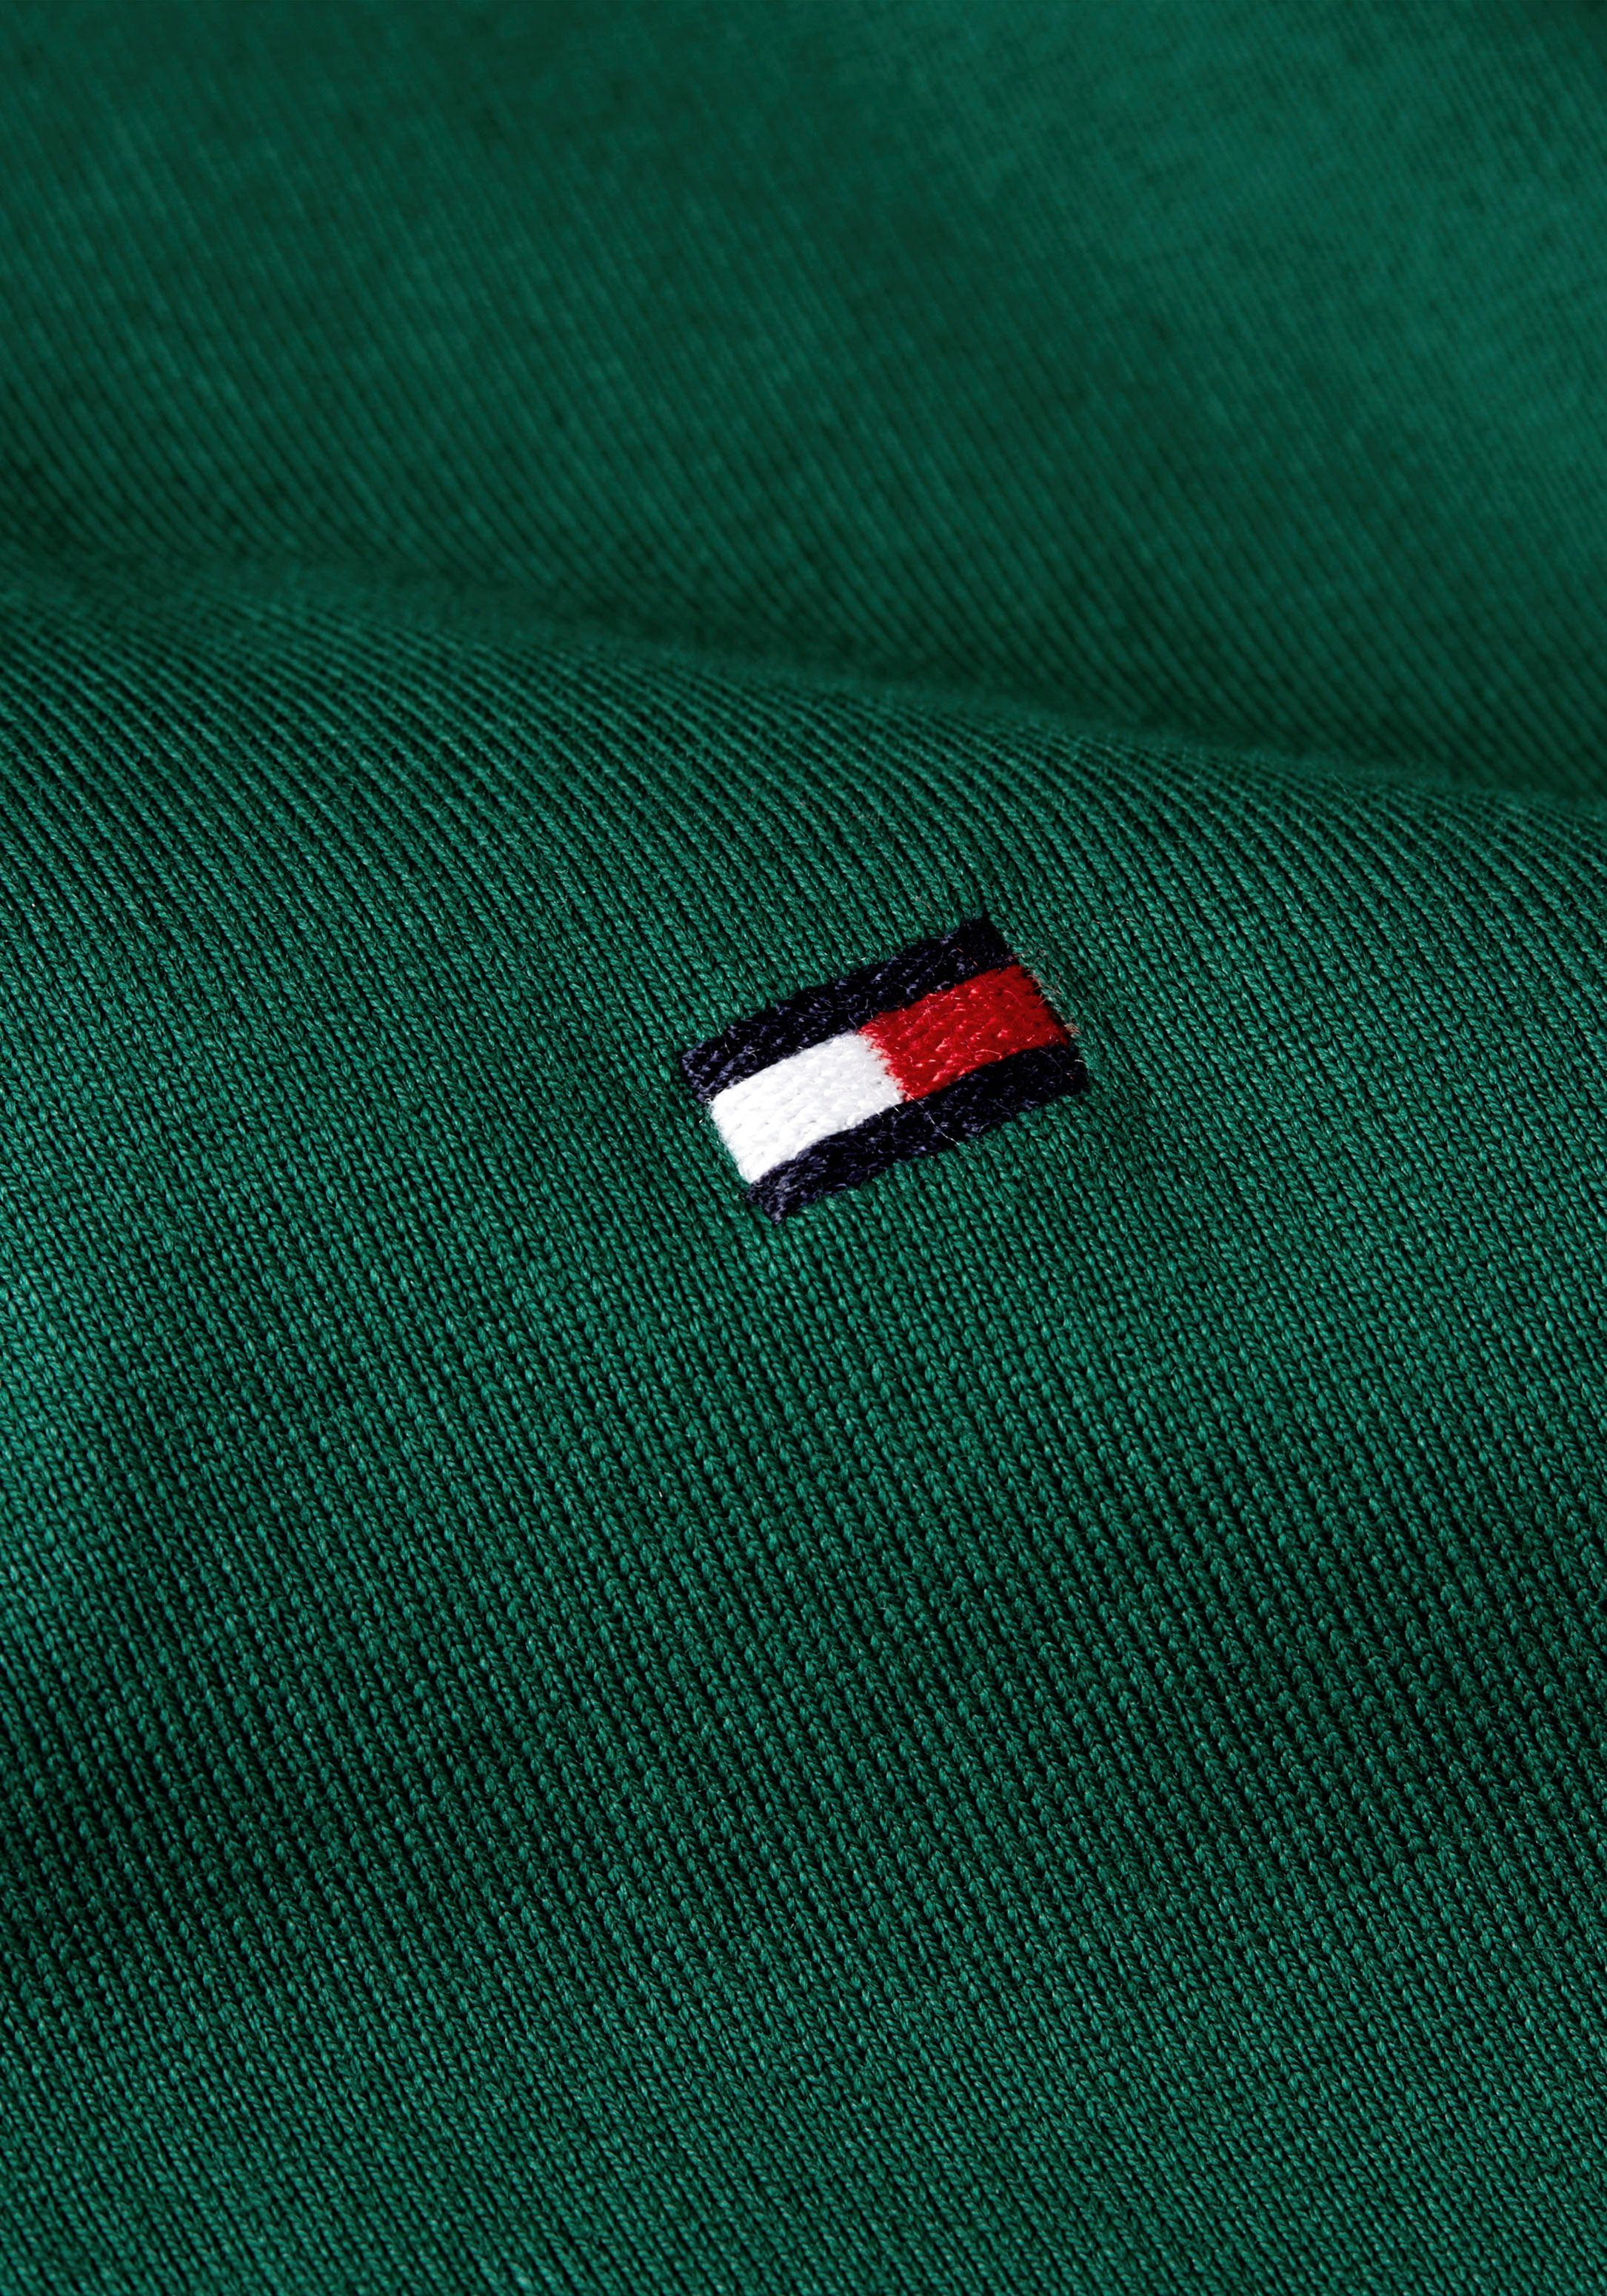 Tommy Hilfiger Poloshirt kontrastfarbenen LOGO Rippbündchen CUFF grün mit Ärmel SLEEVE FIT am FLAG SLIM